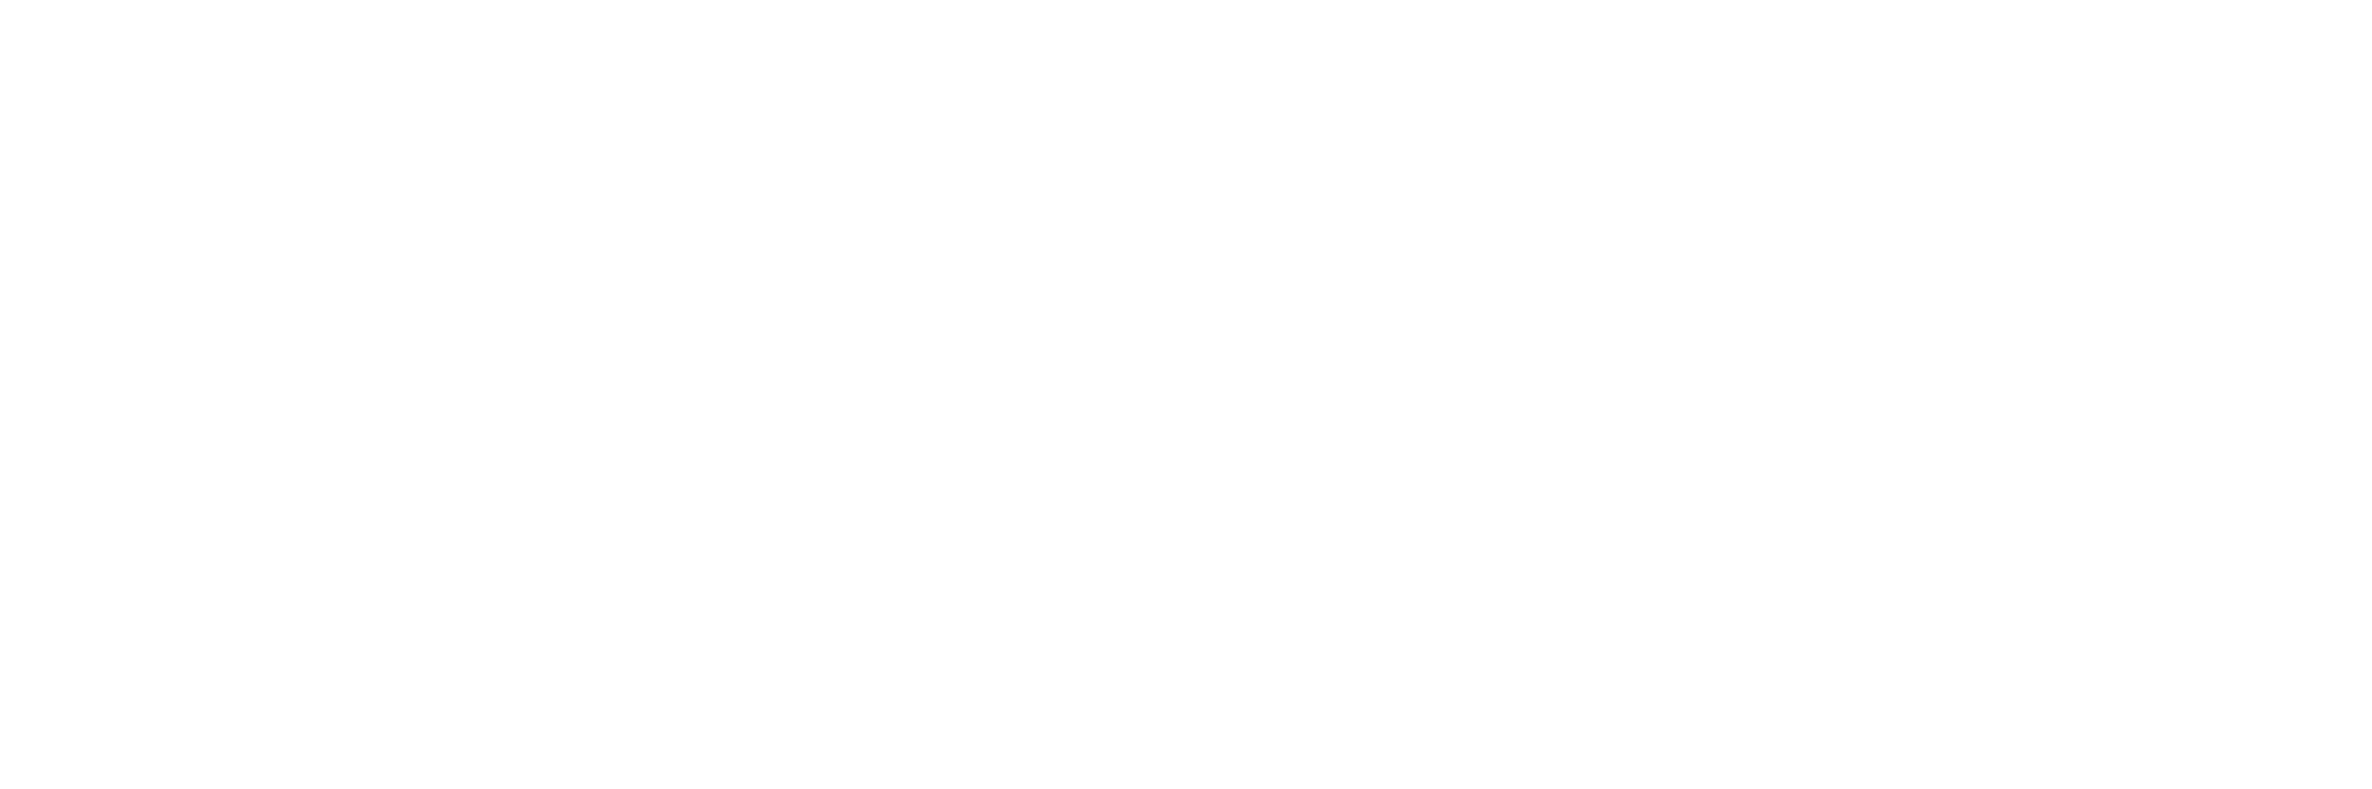 MONOMIX86